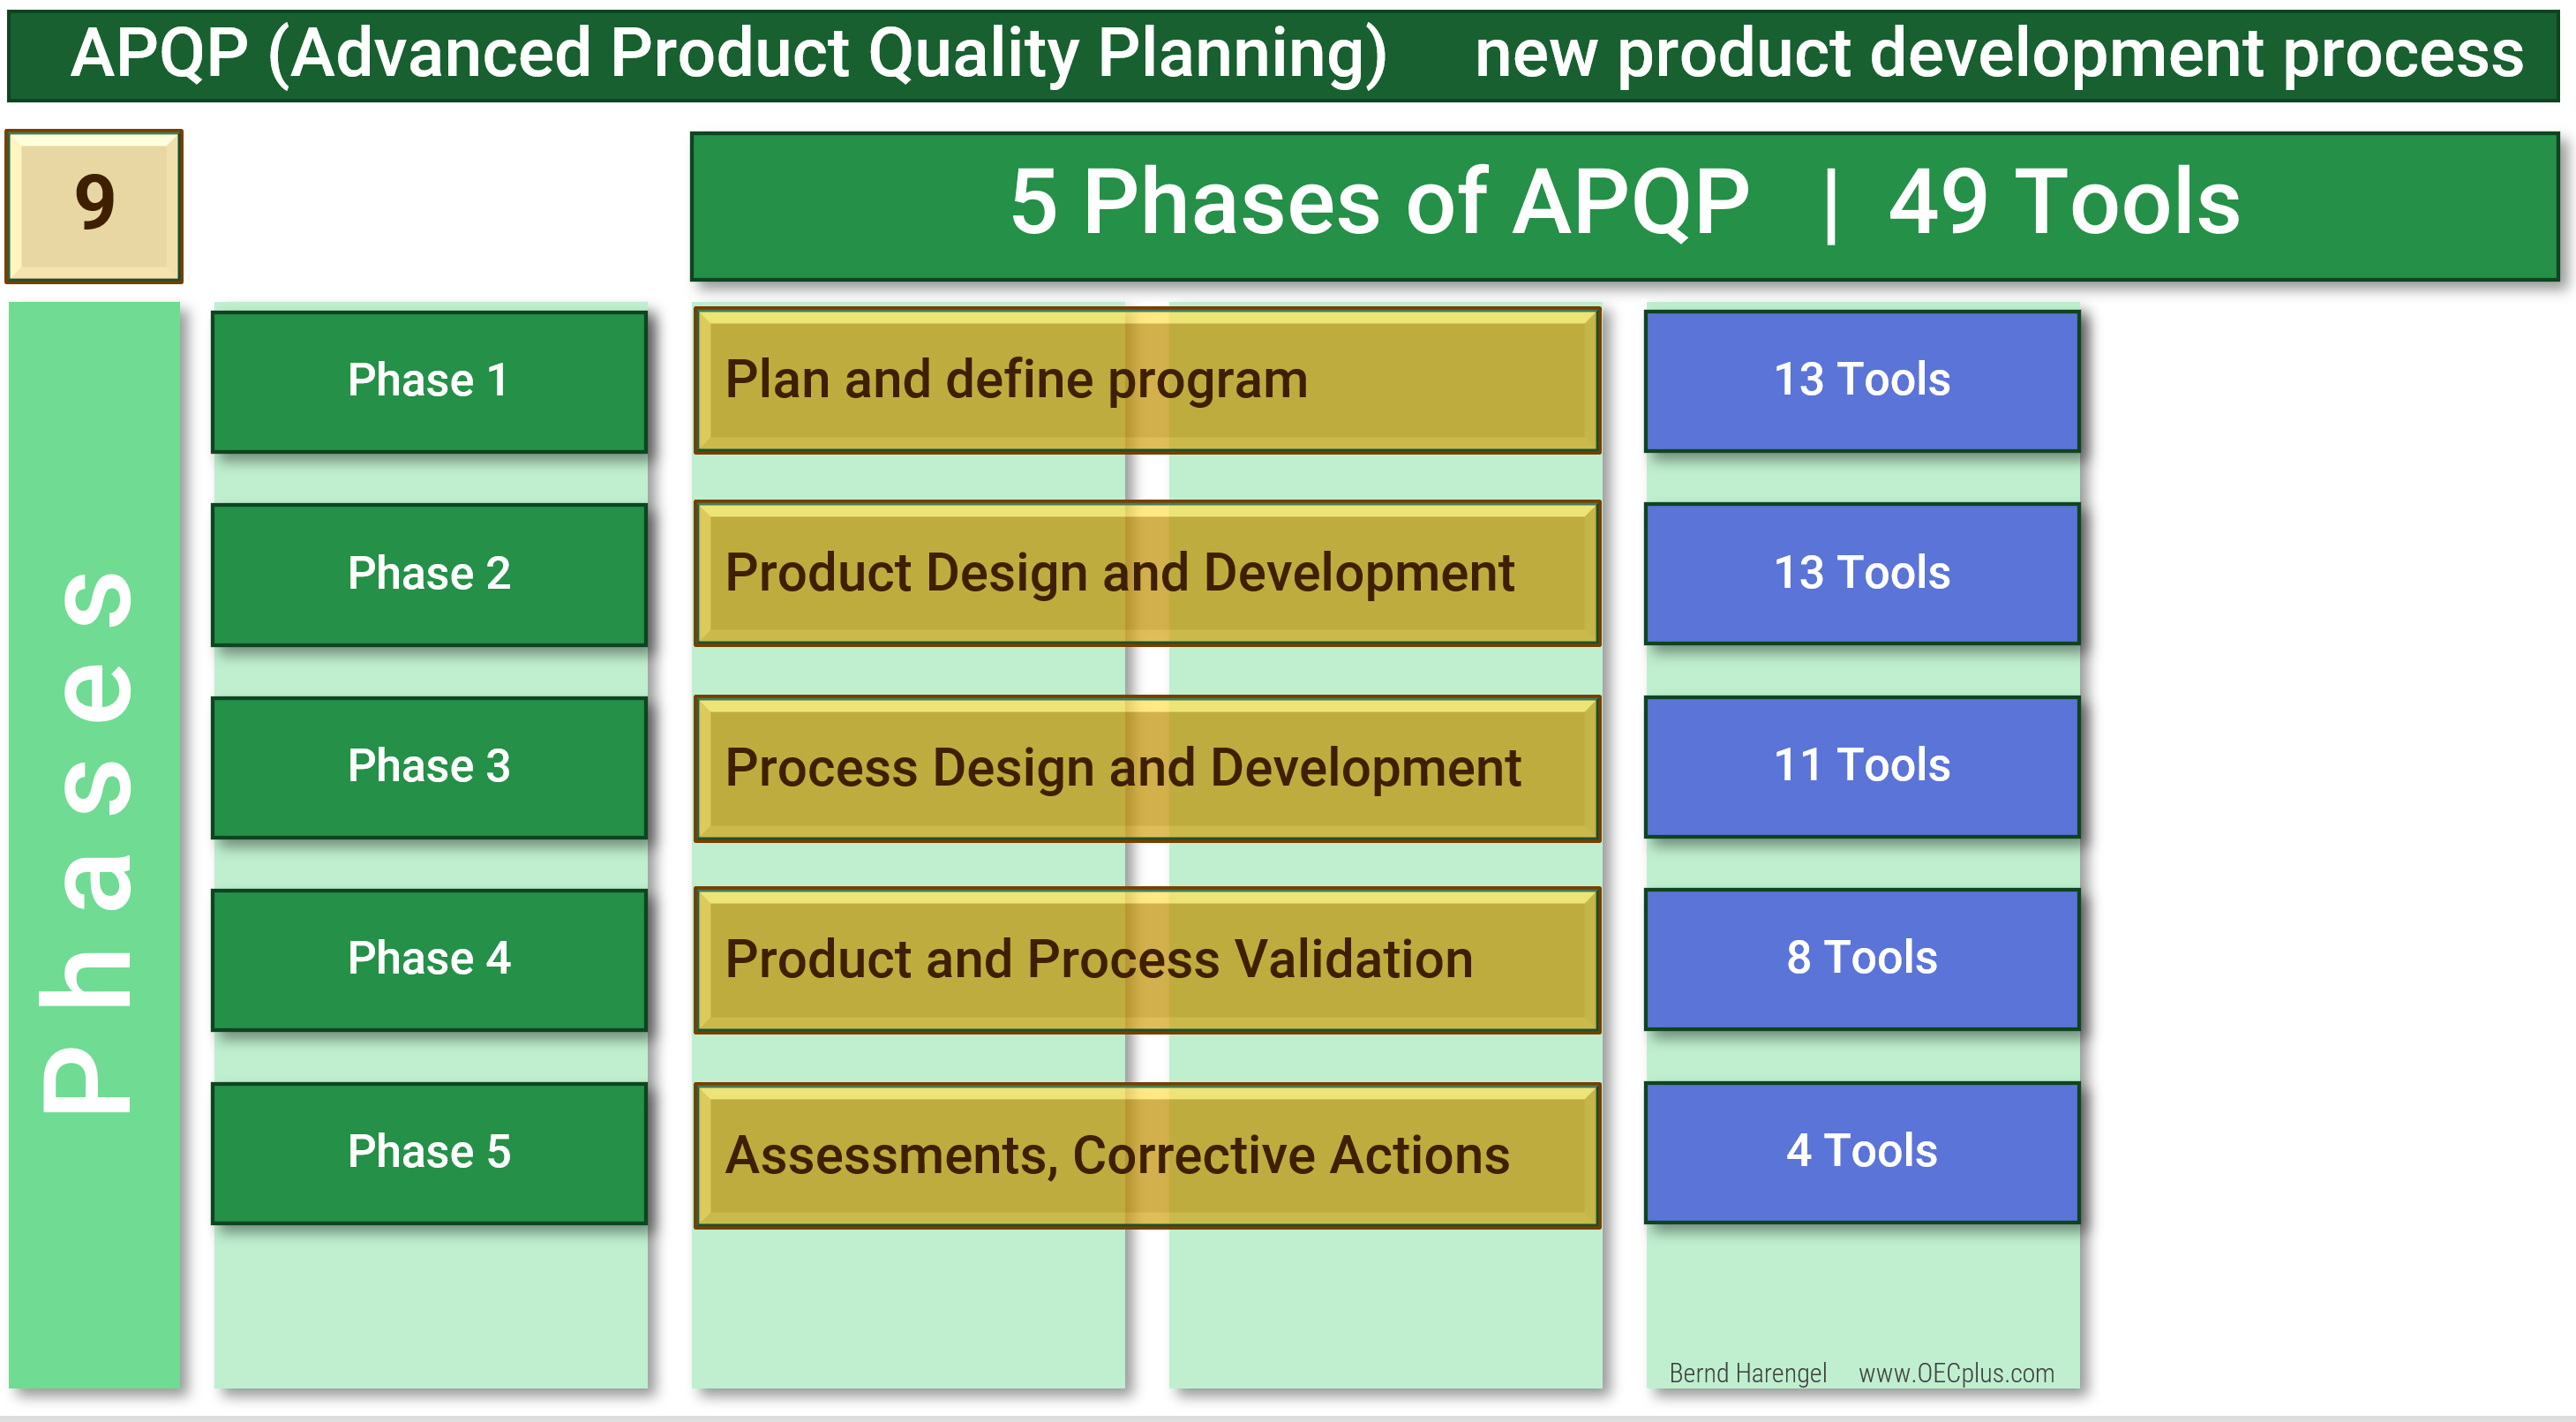 Das Bild zeigt eine grafische Darstellung des APQP-Prozesses, der Advanced Product Quality Planning genannt wird und in 5 Phasen abläuft. Es handelt sich um einen zentralen Prozess im Qualitätsmanagement und in der Produktentwicklung.